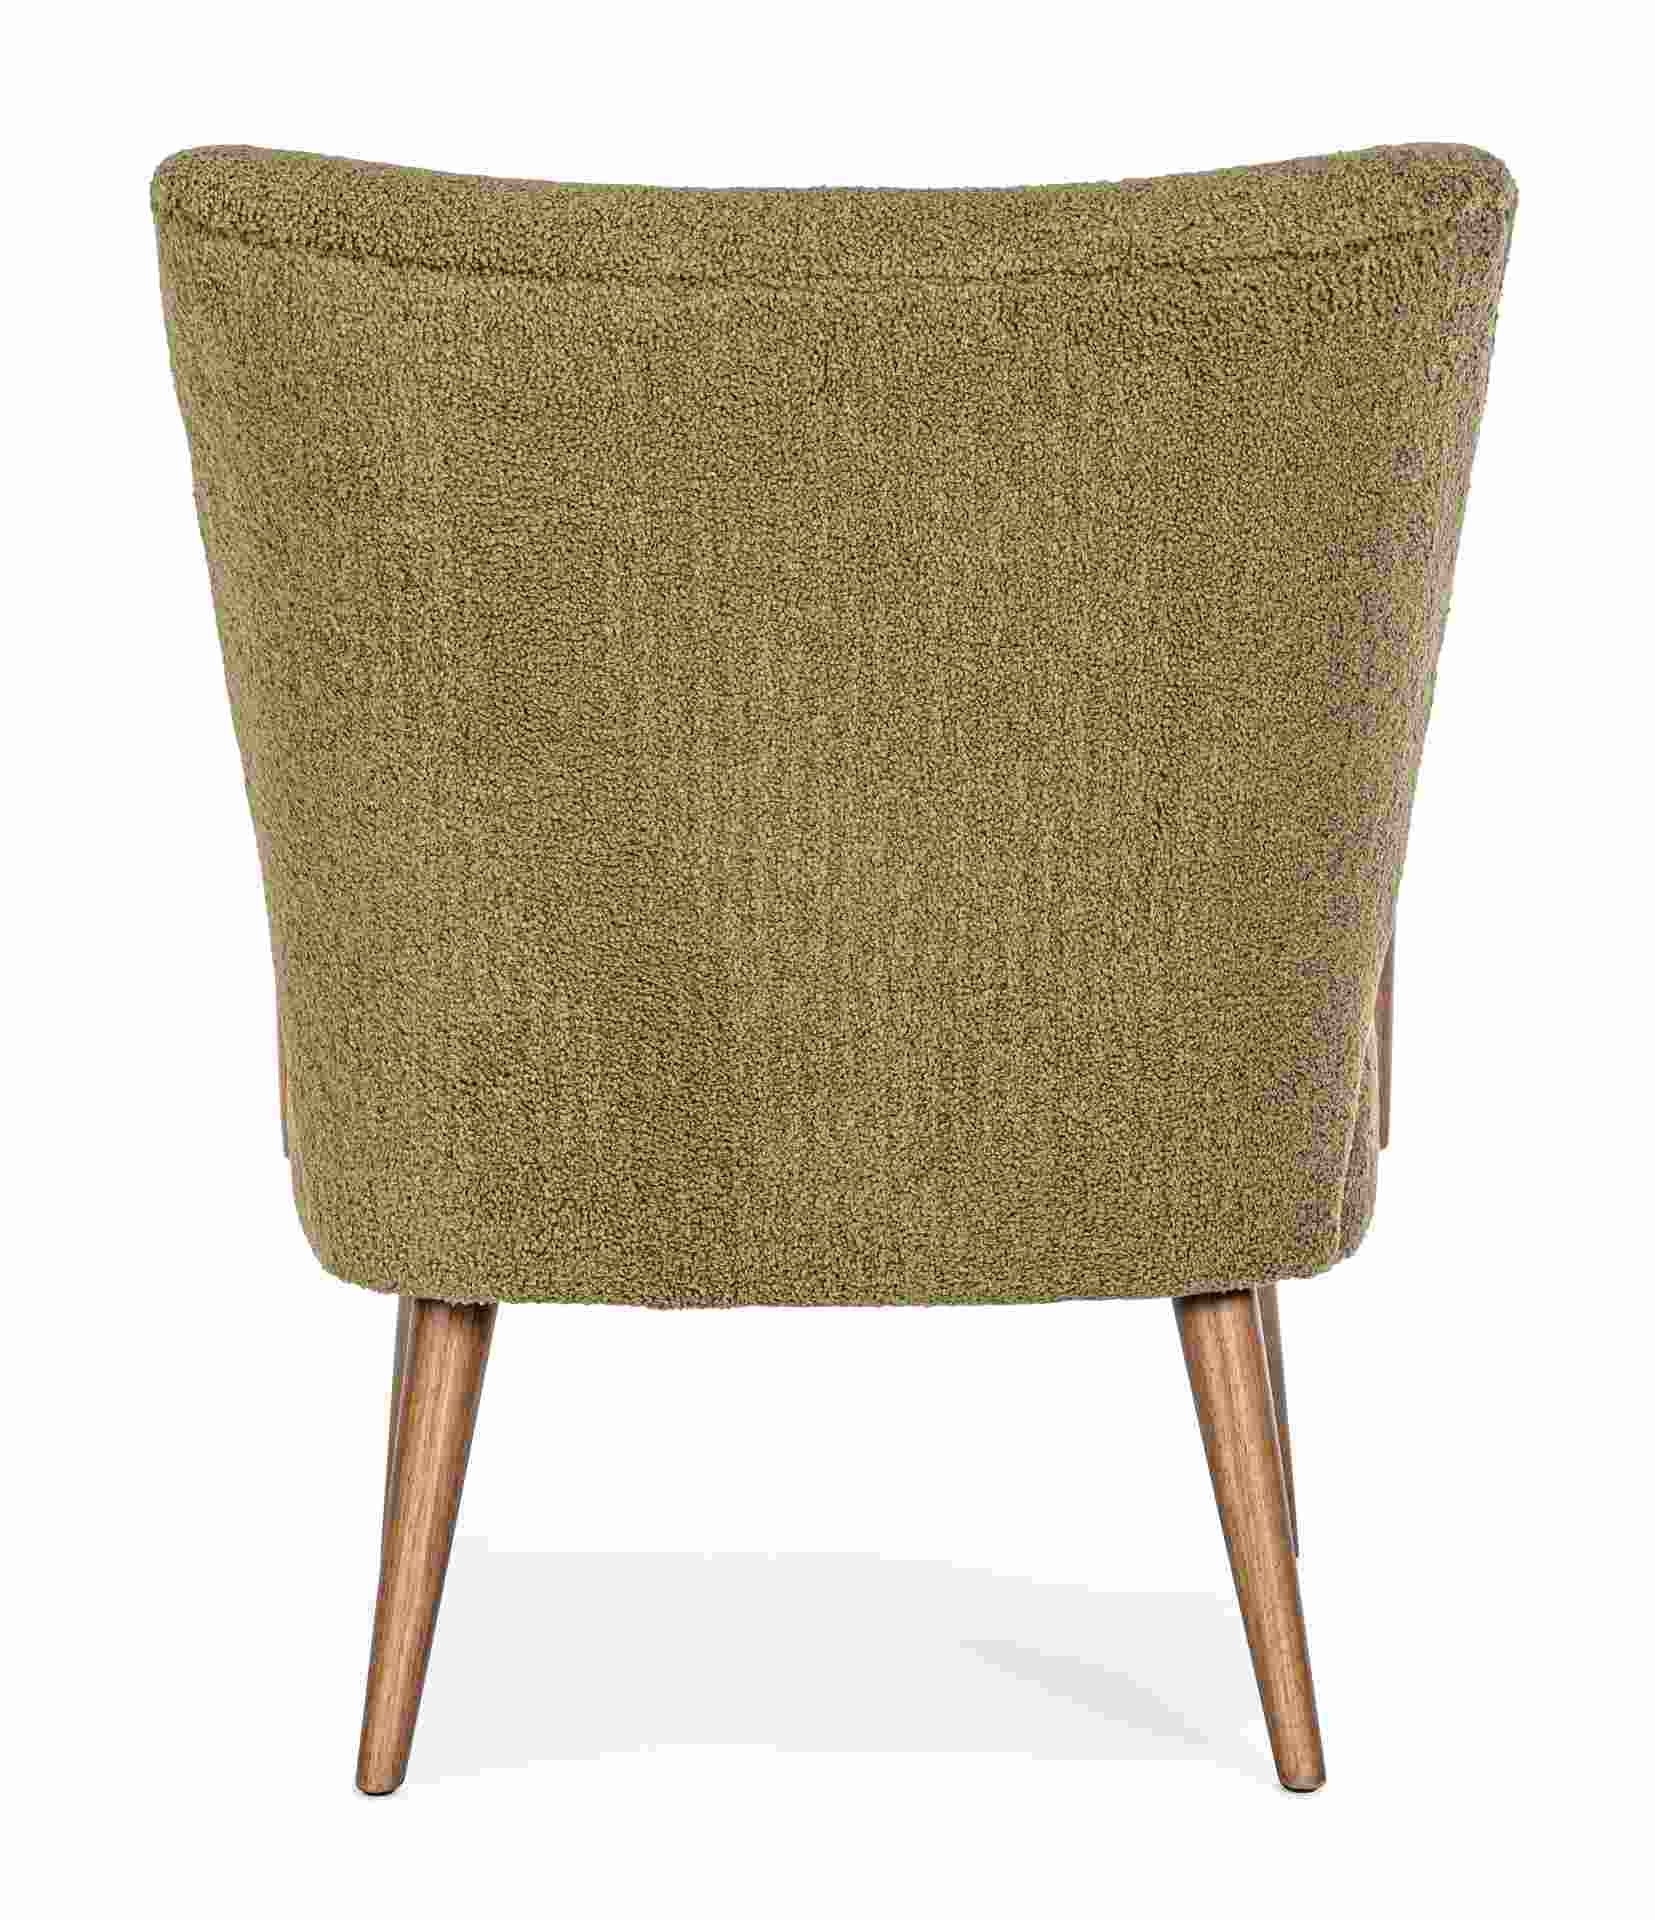 Der Sessel Moritz überzeugt mit seinem modernen Design. Gefertigt wurde er aus Stoff in Teddy-Optik, welcher einen braunen Farbton besitzt. Das Gestell ist aus Kautschukholz und hat eine natürliche Farbe. Der Sessel besitzt eine Sitzhöhe von 45 cm. Die Br